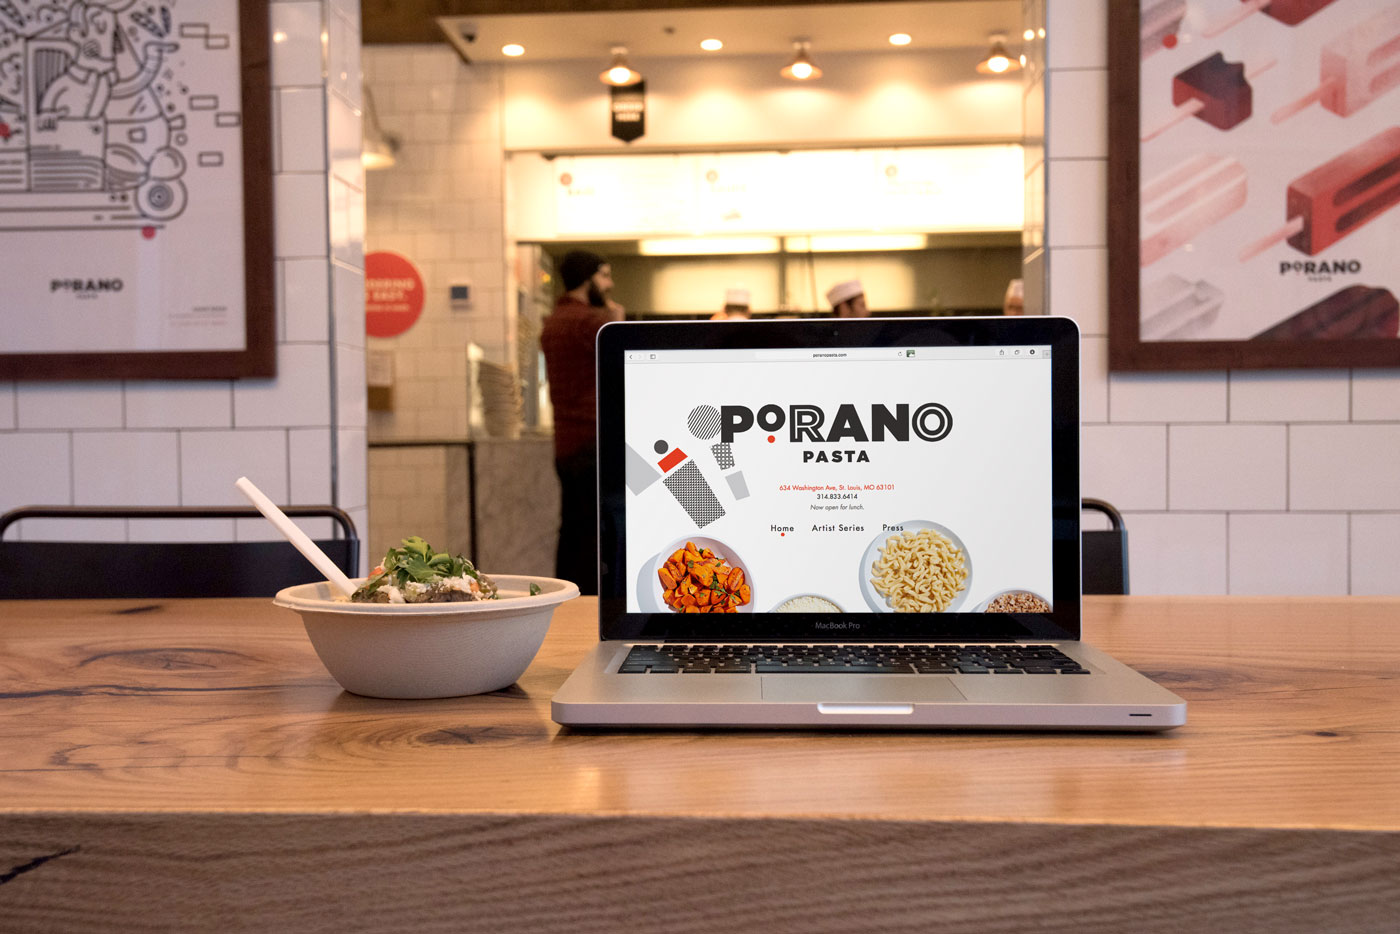 Porano Pasta Restaurant Website Design